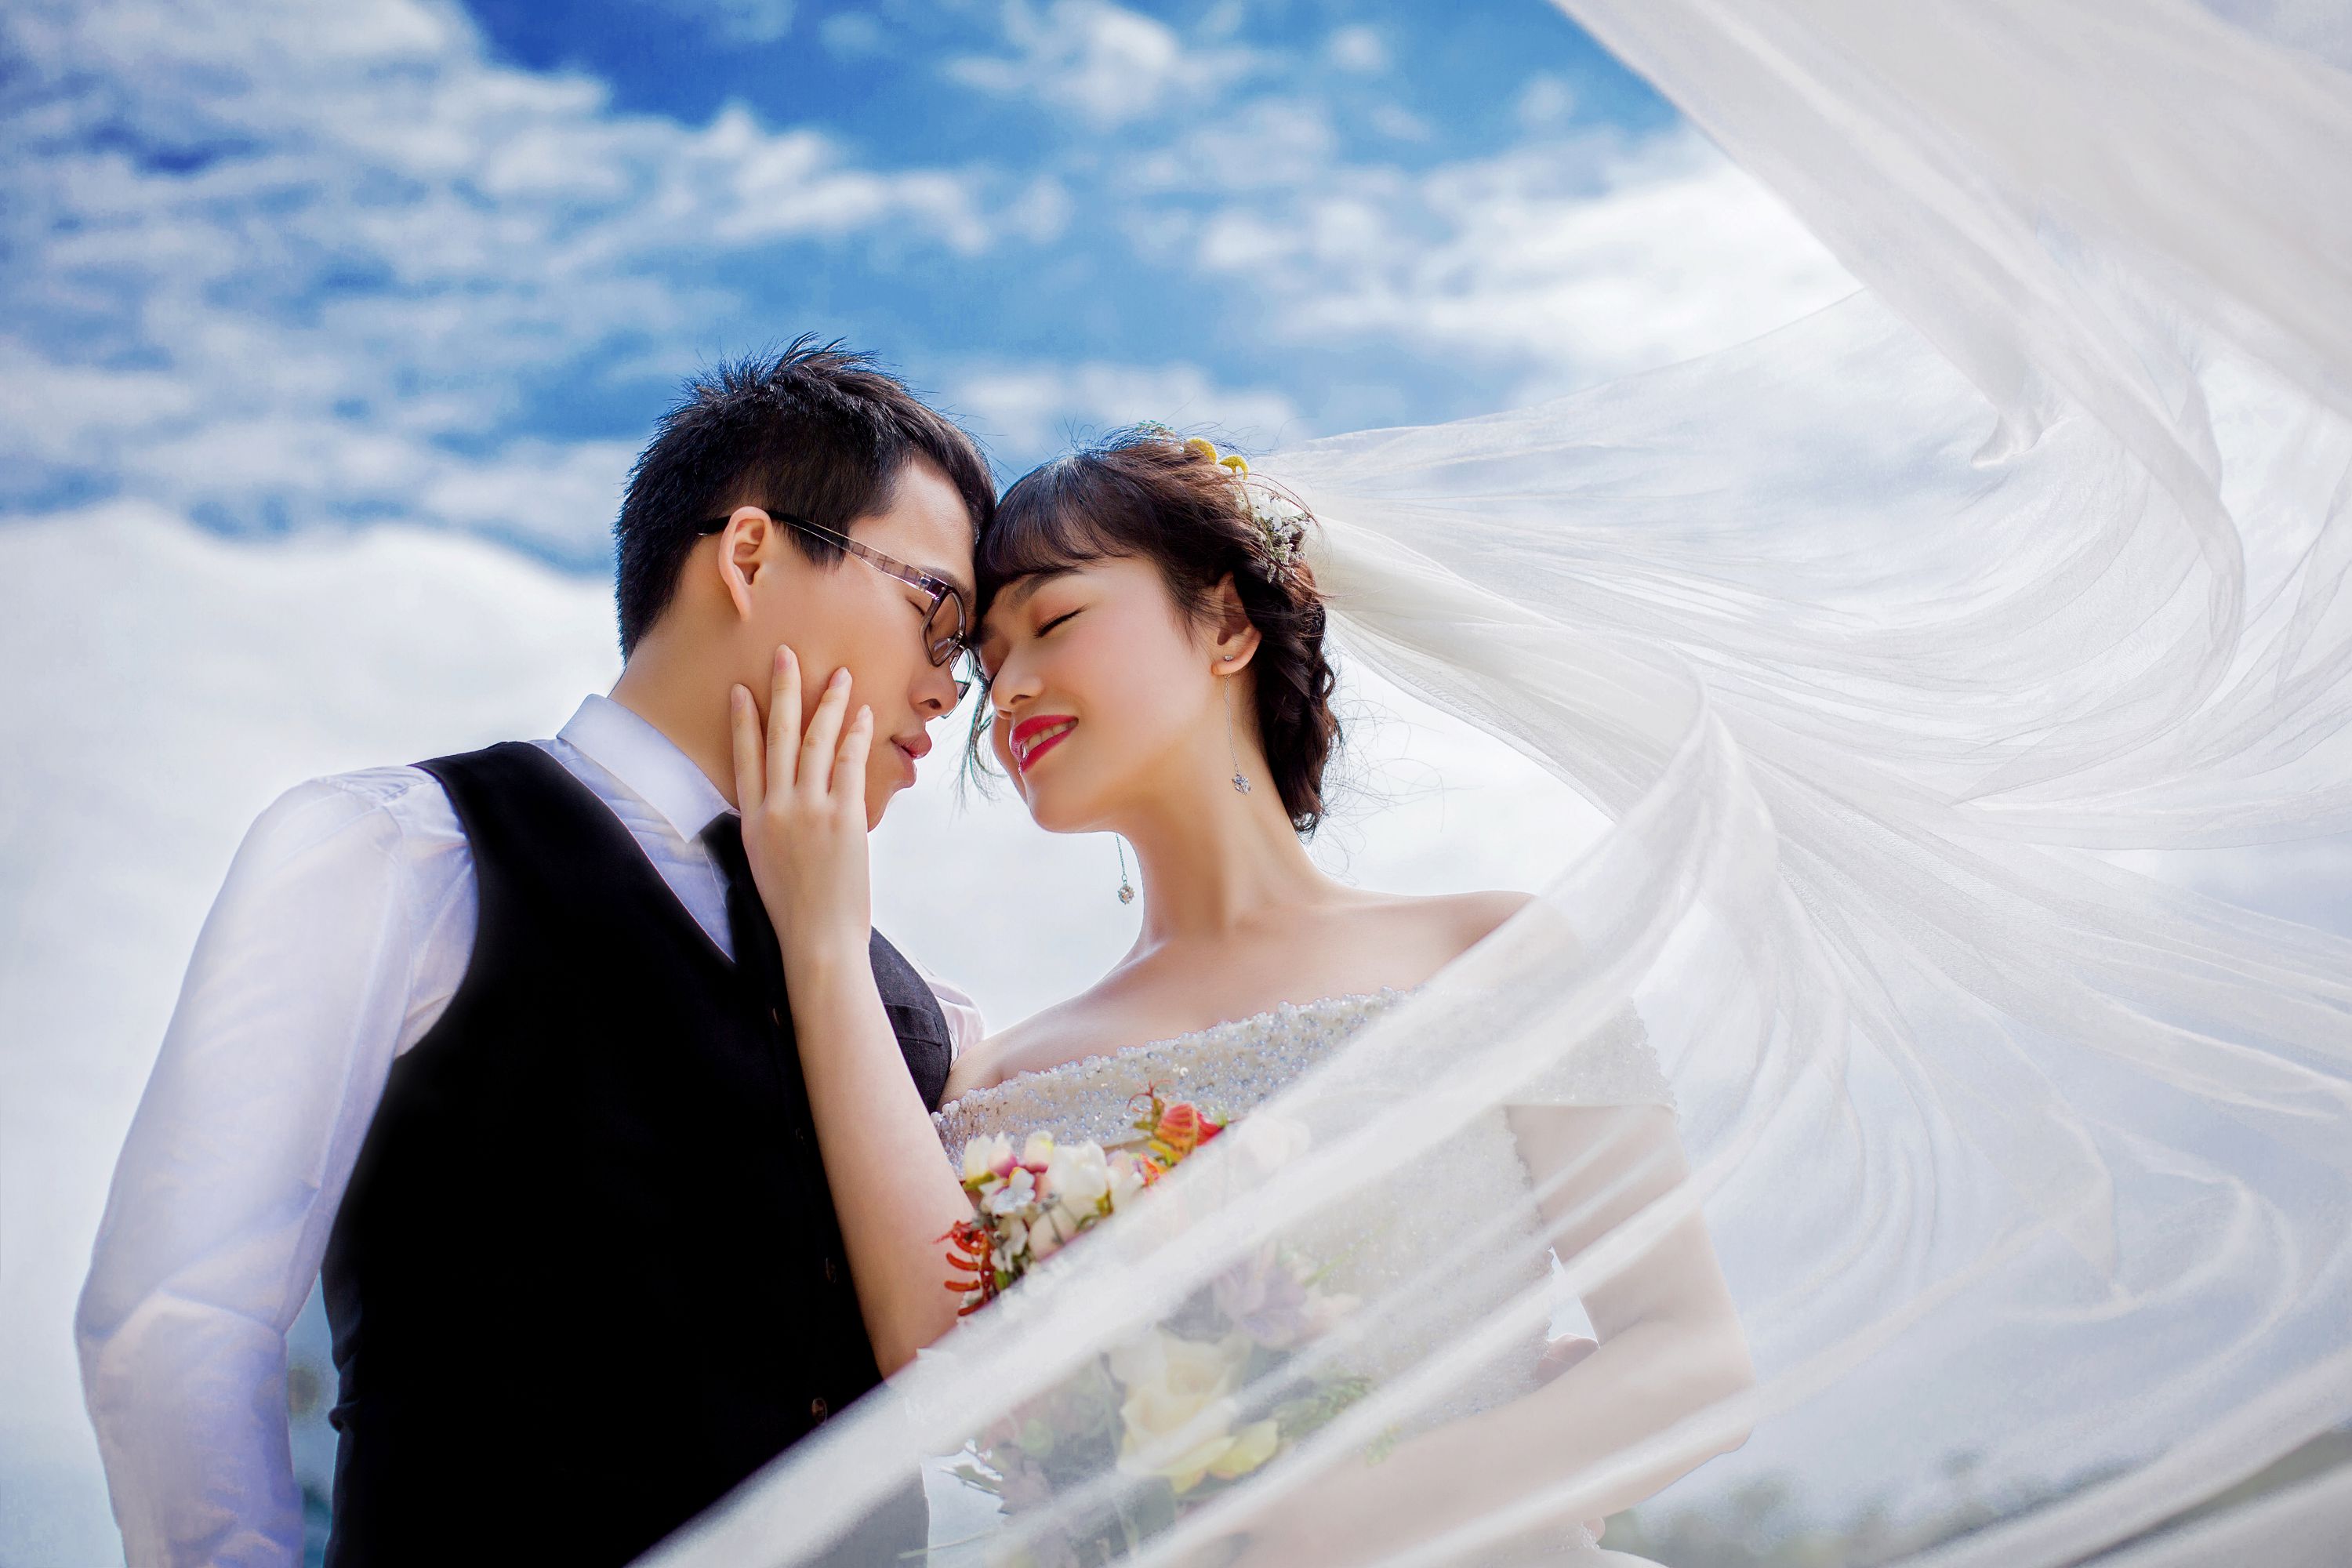 2017年4月深圳结婚照,深圳婚纱照,婚纱照图片